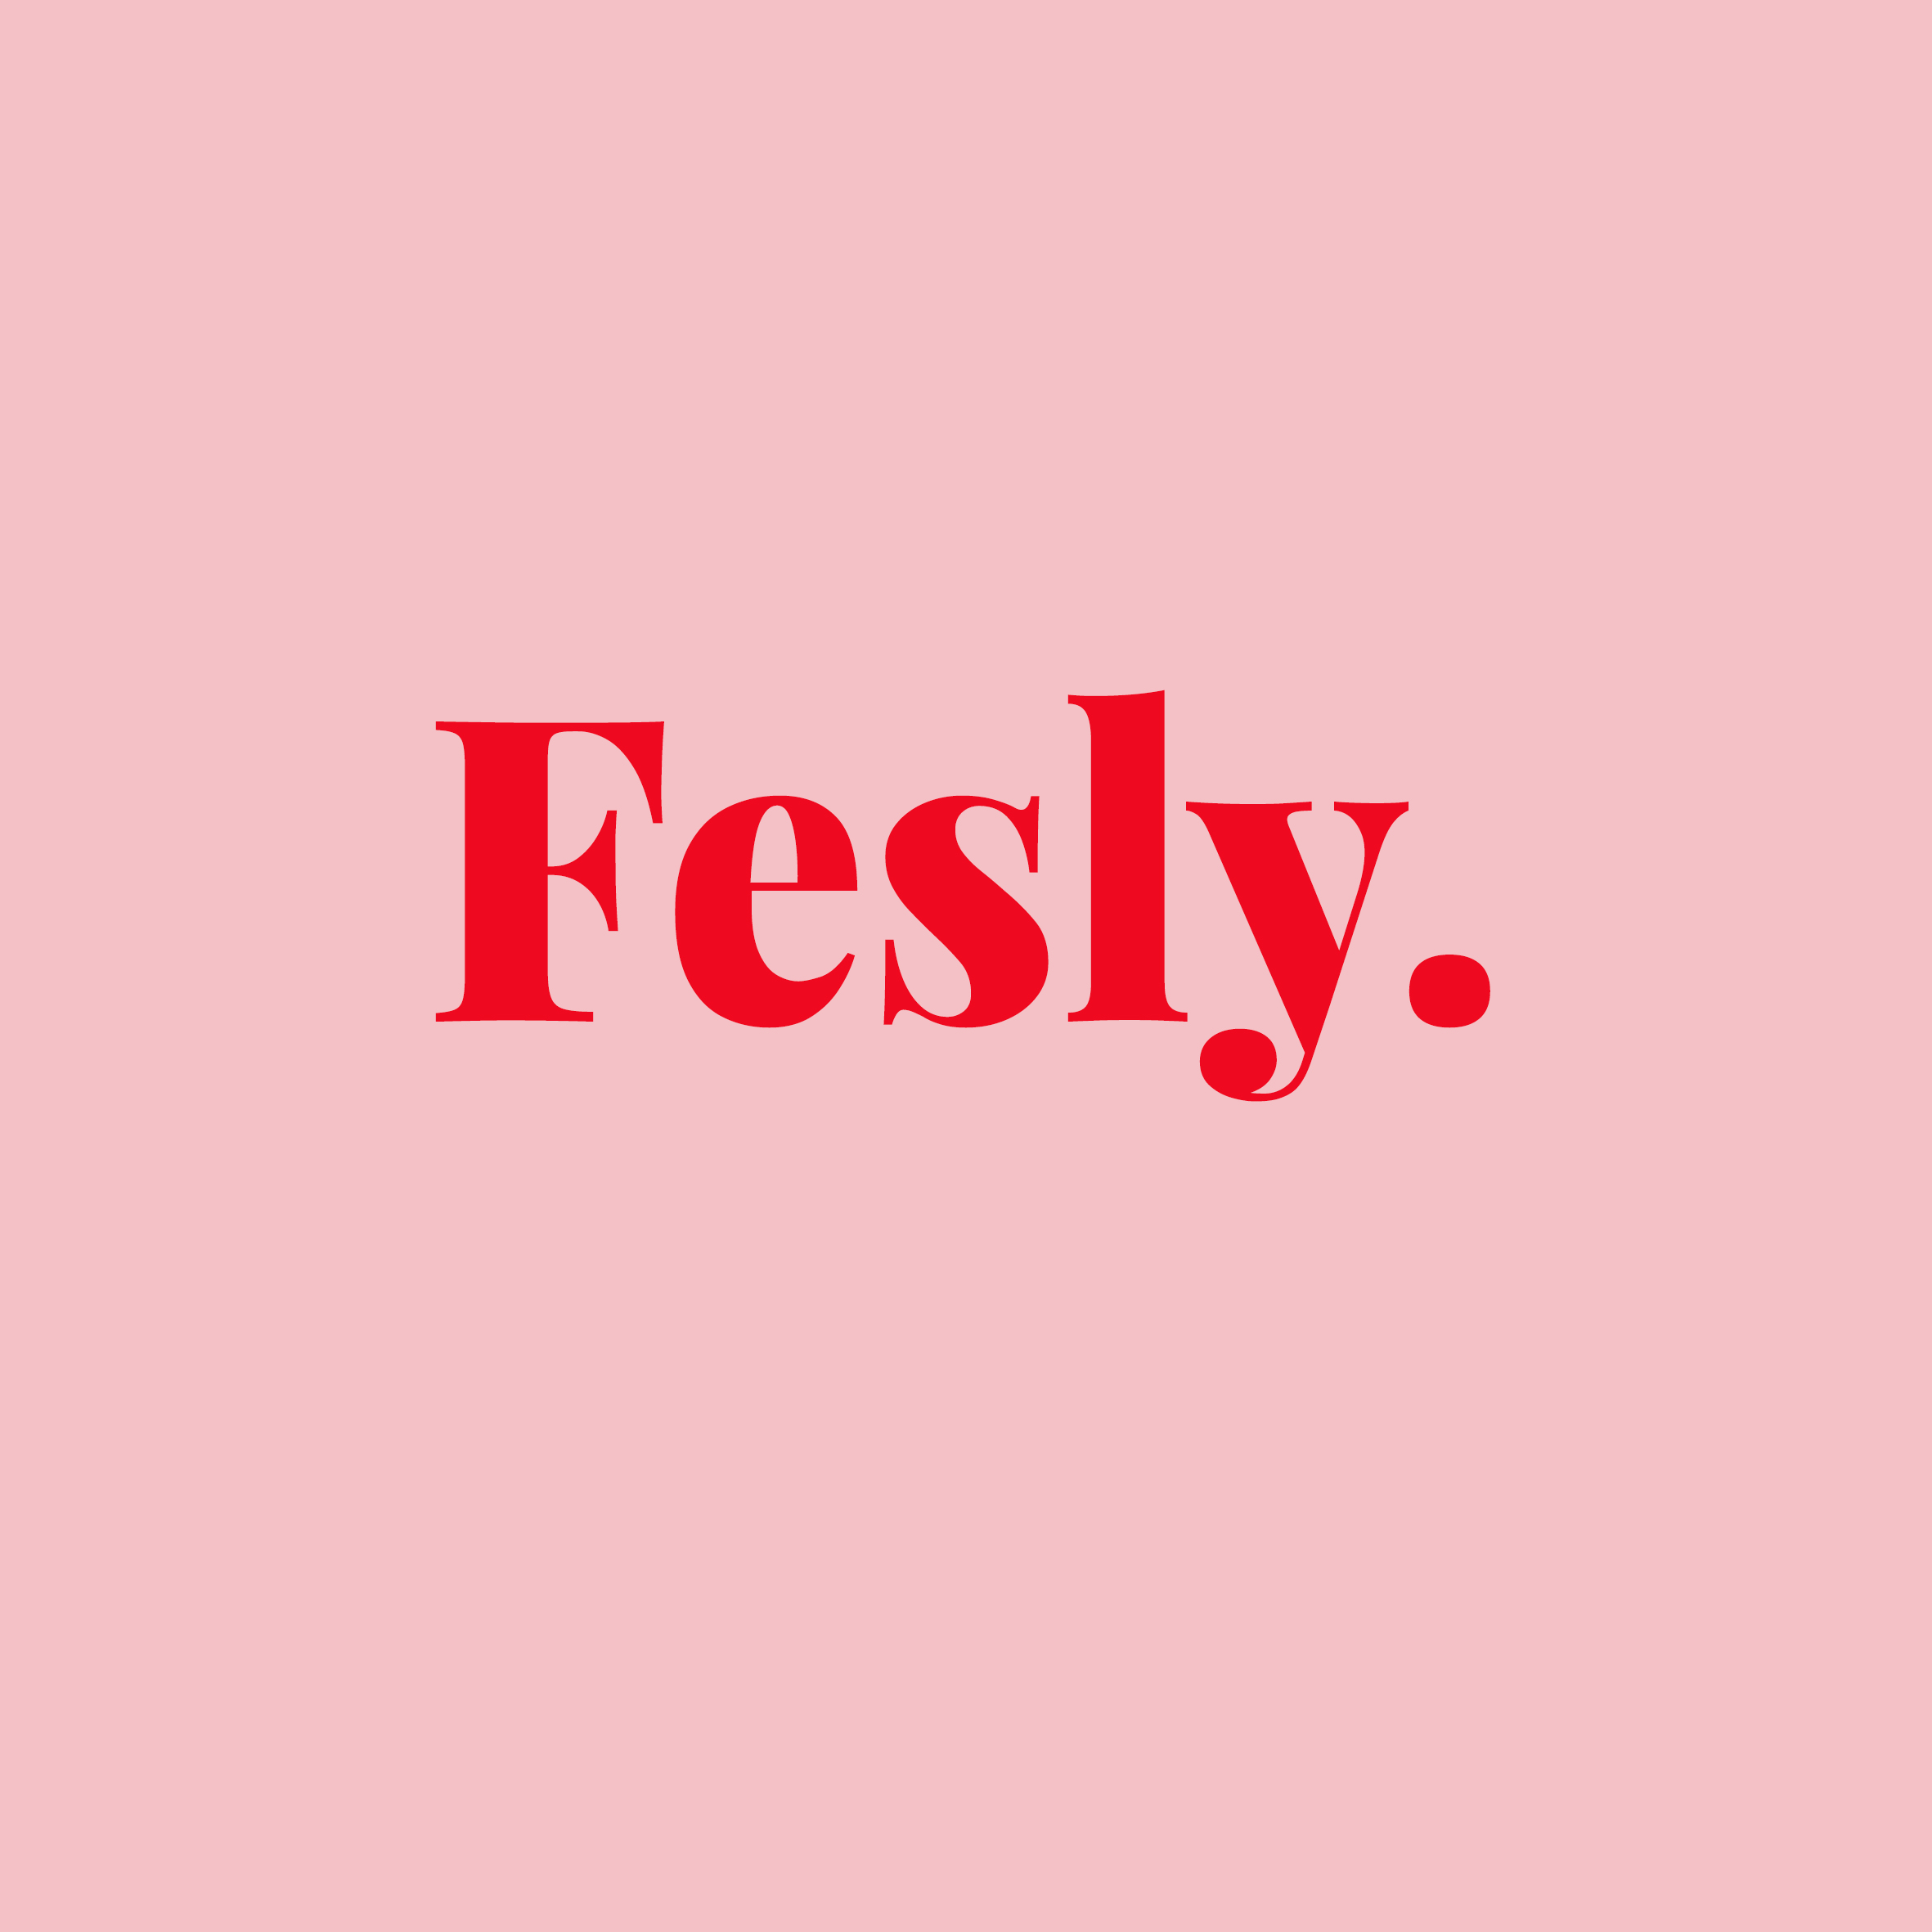 Fesly